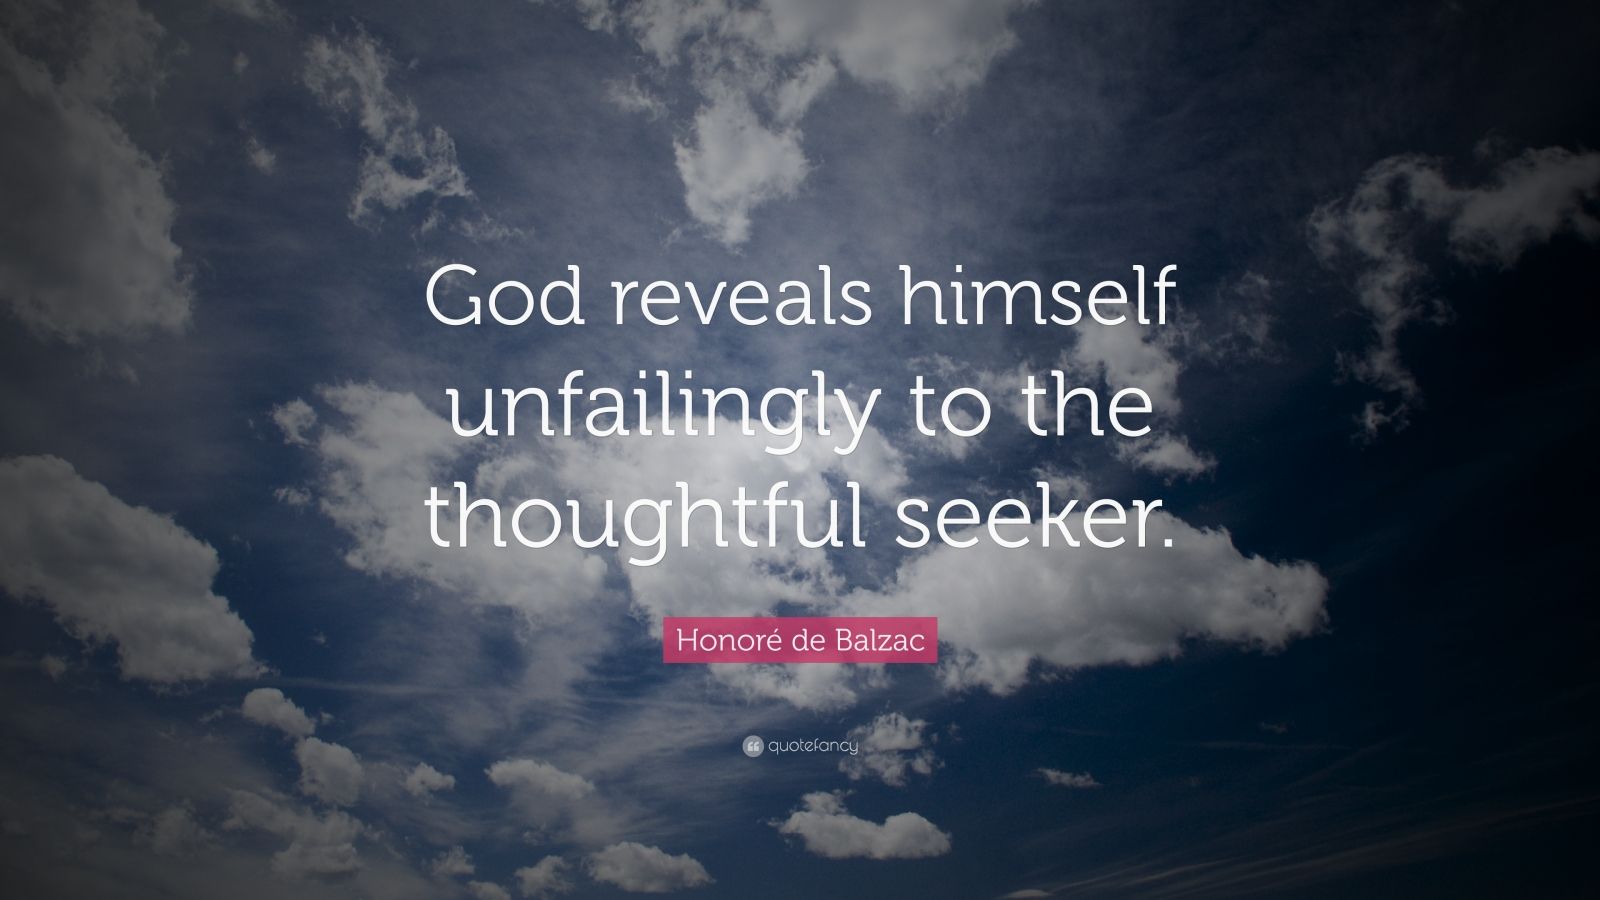 Honoré de Balzac Quote: “God reveals himself unfailingly to the ...